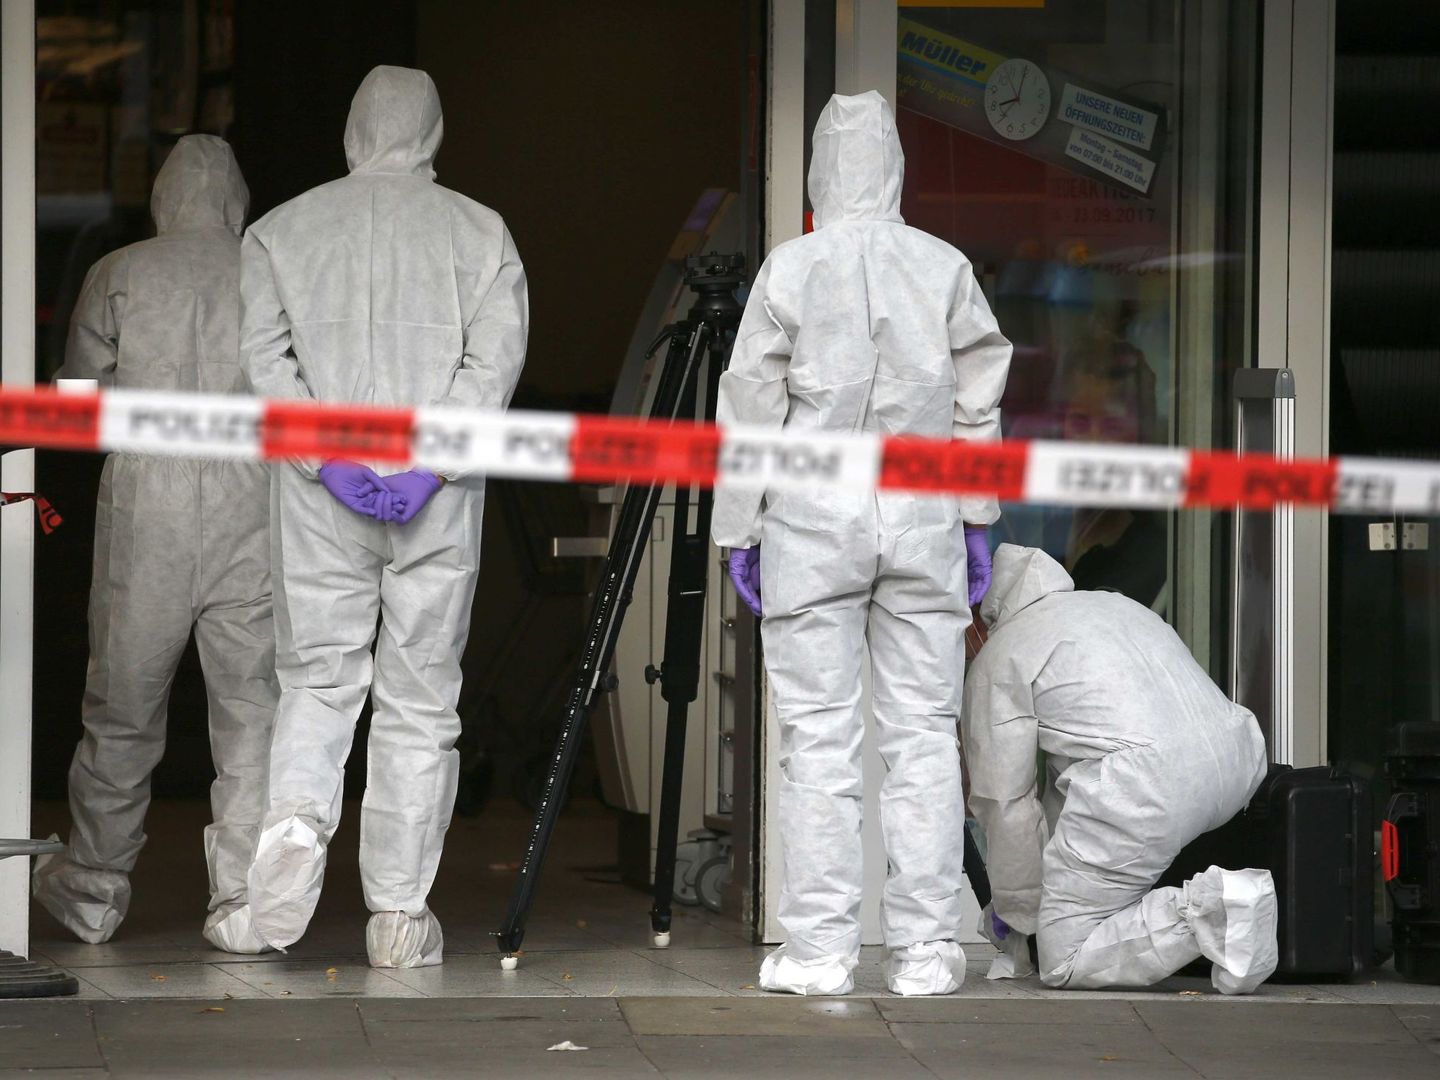 Investigadores de la policía en el lugar del ataque. (Reuters)